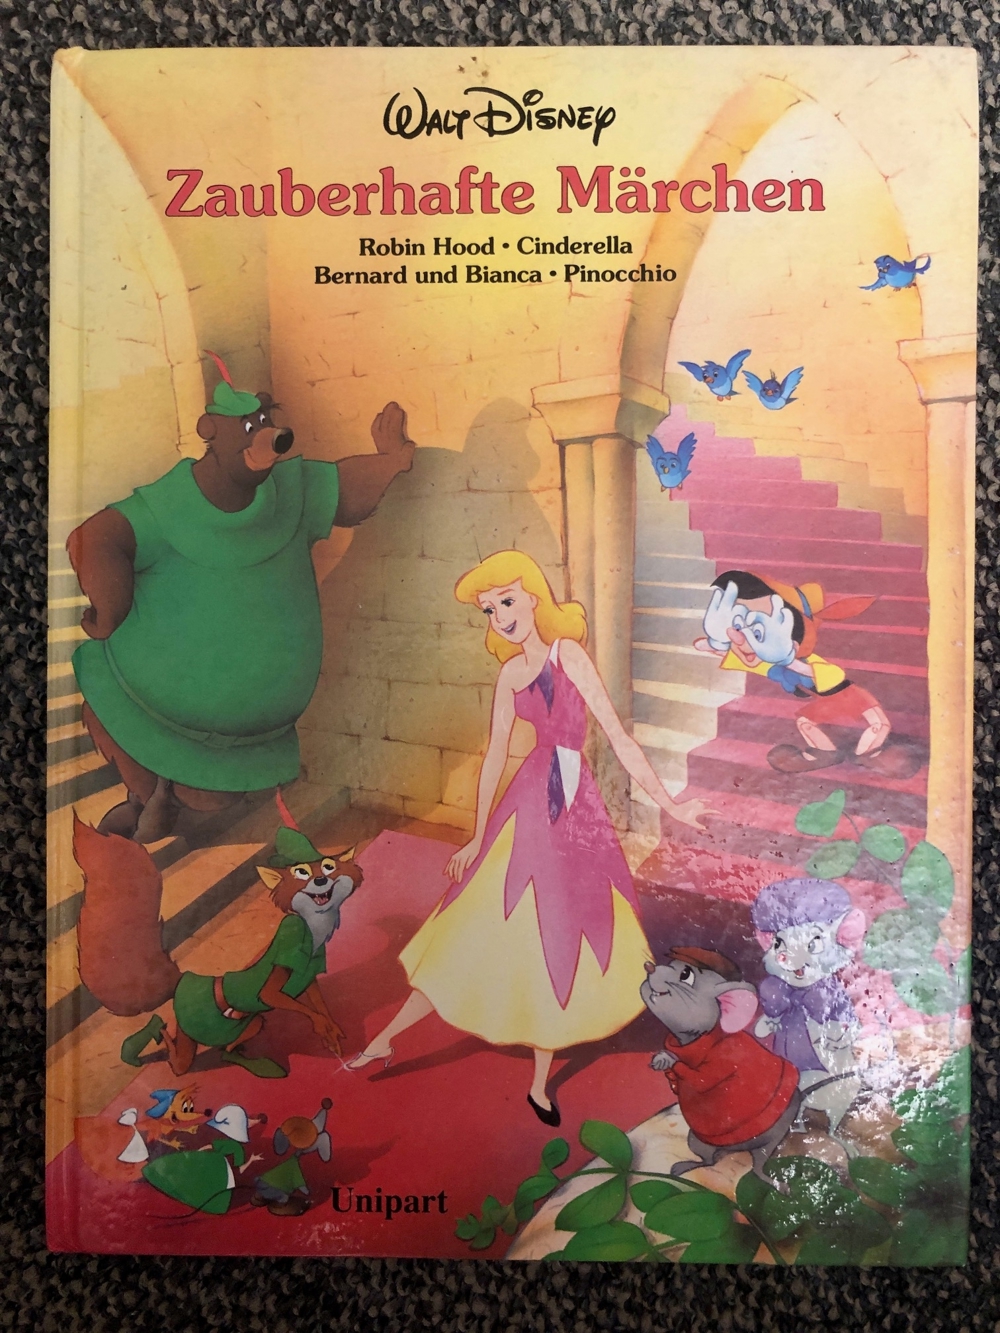 Märchenbuch: Zauberhafte Märchen von Walt Disney - immer wieder schön